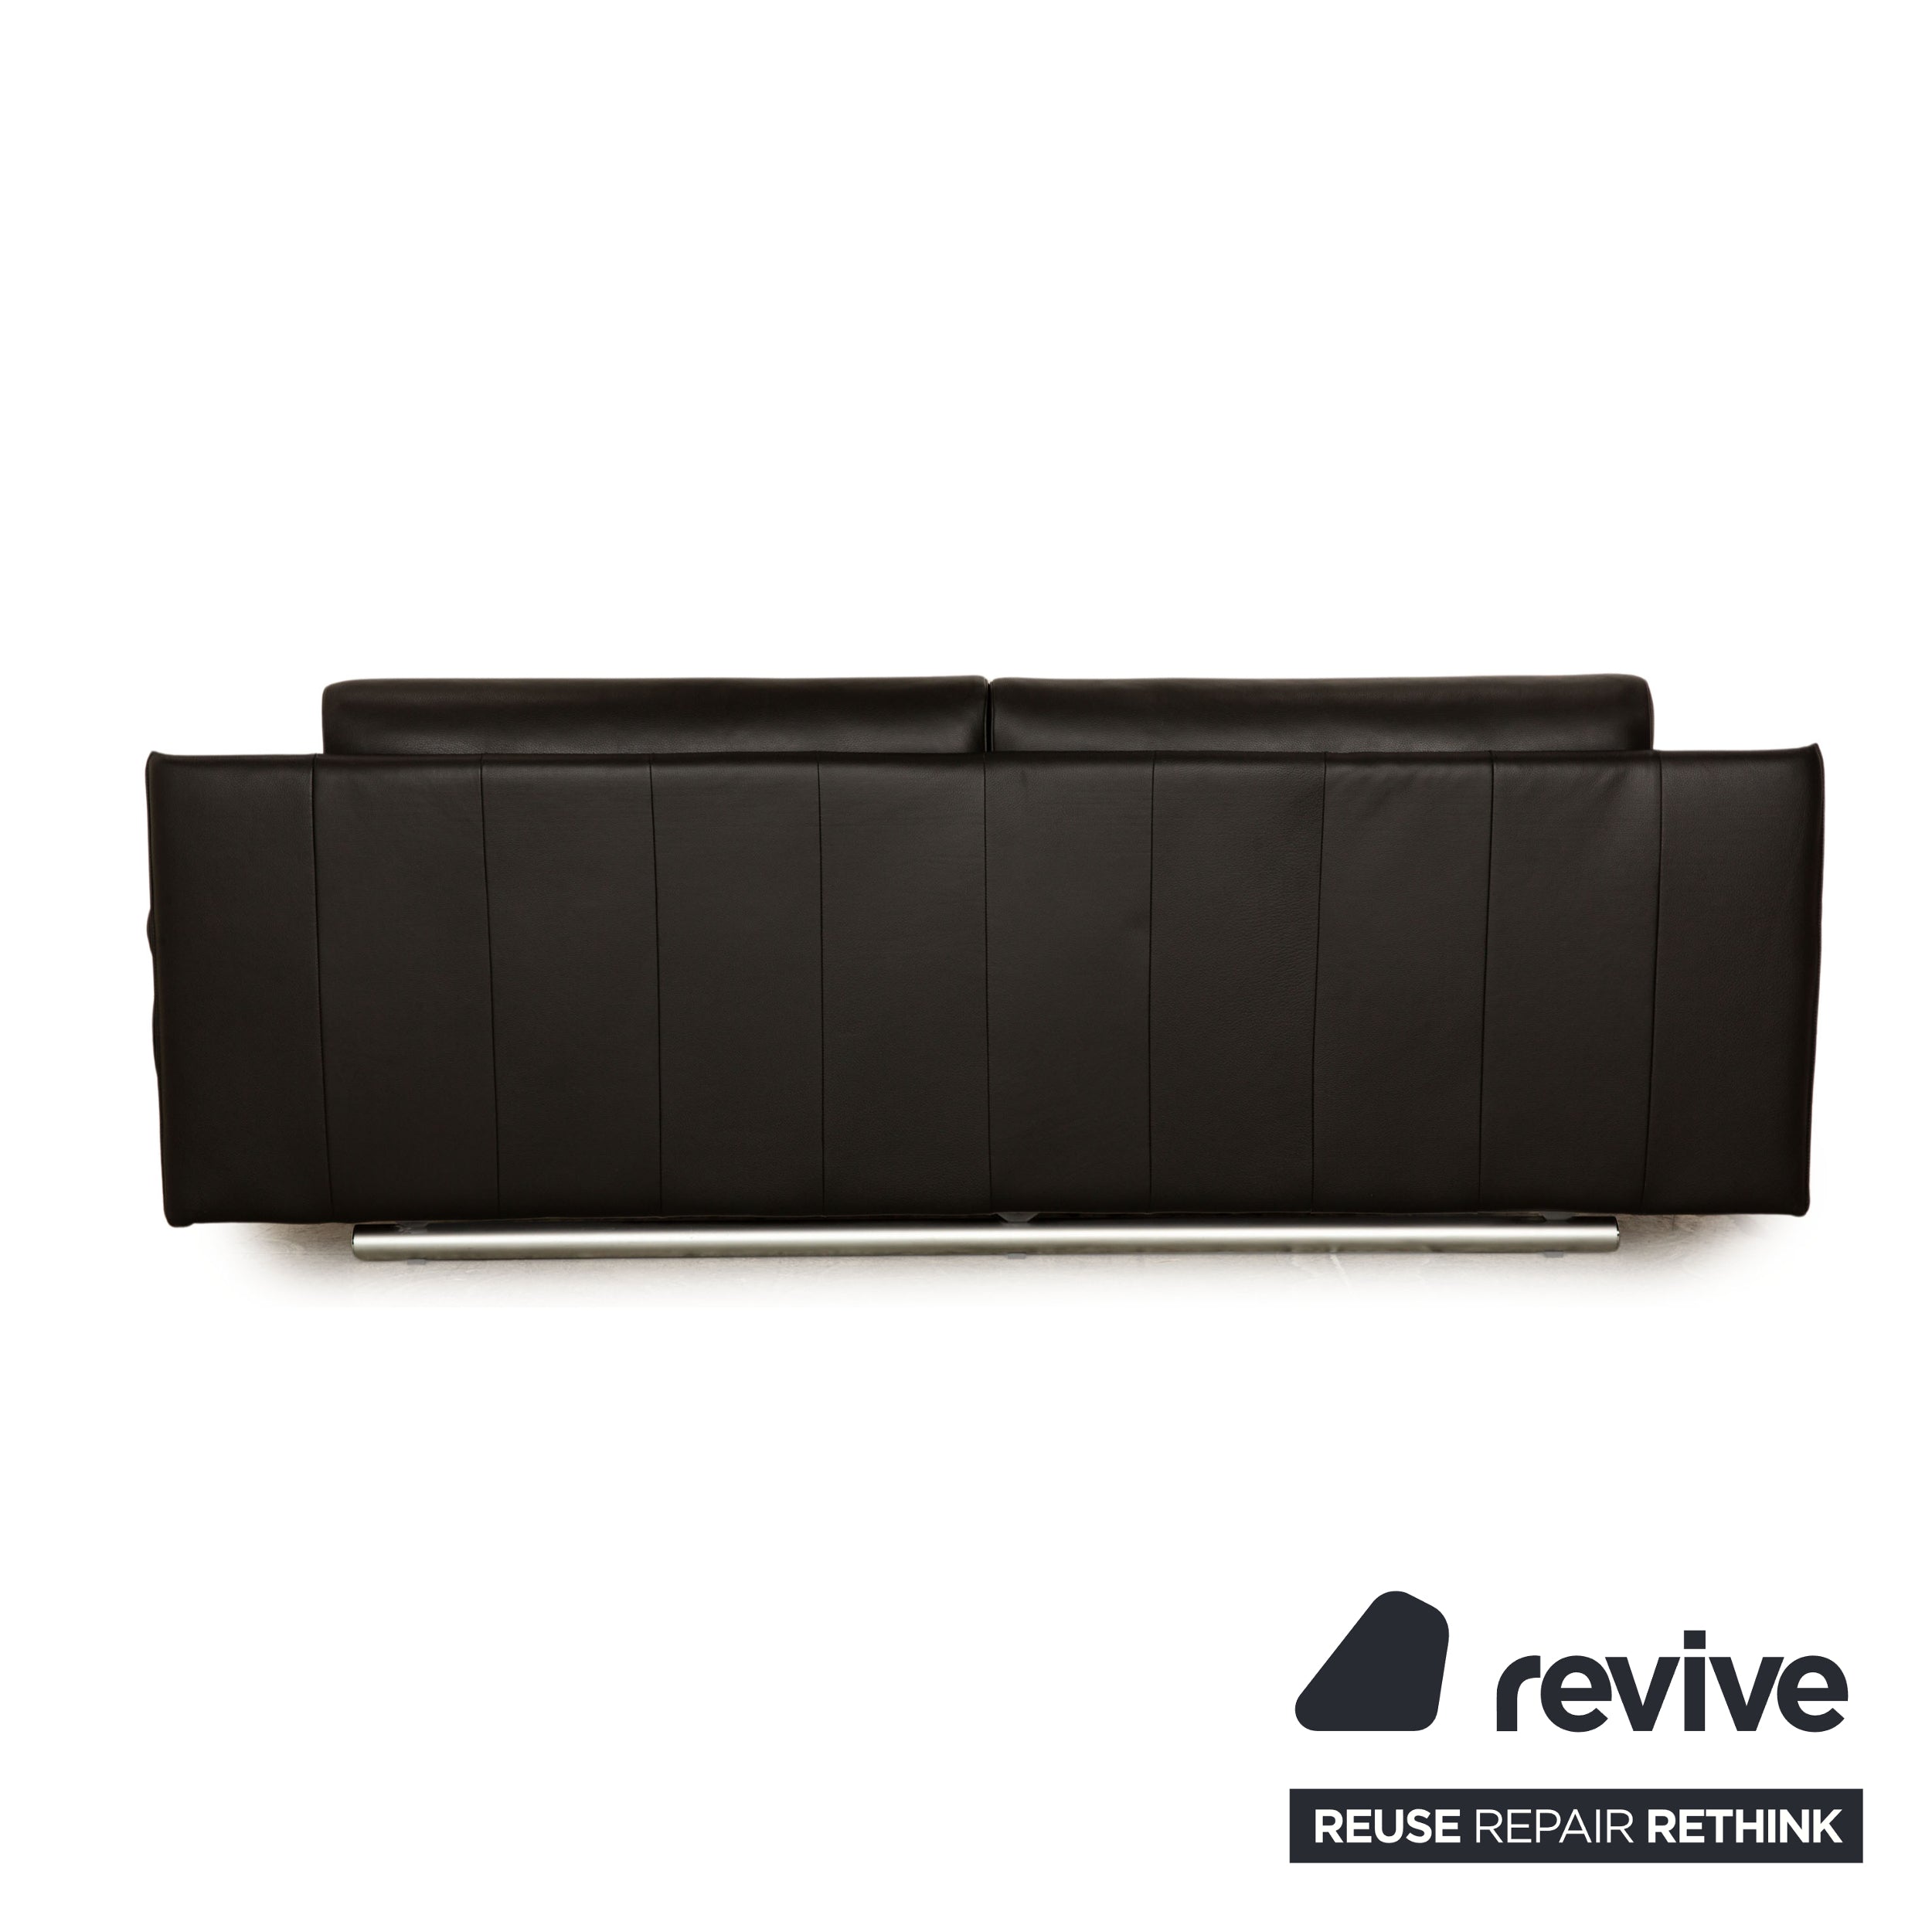 Rolf Benz 6500 Leder Sofa Garnitur Schwarz  Dreisitzer Sofa Couch manuelle Funktion